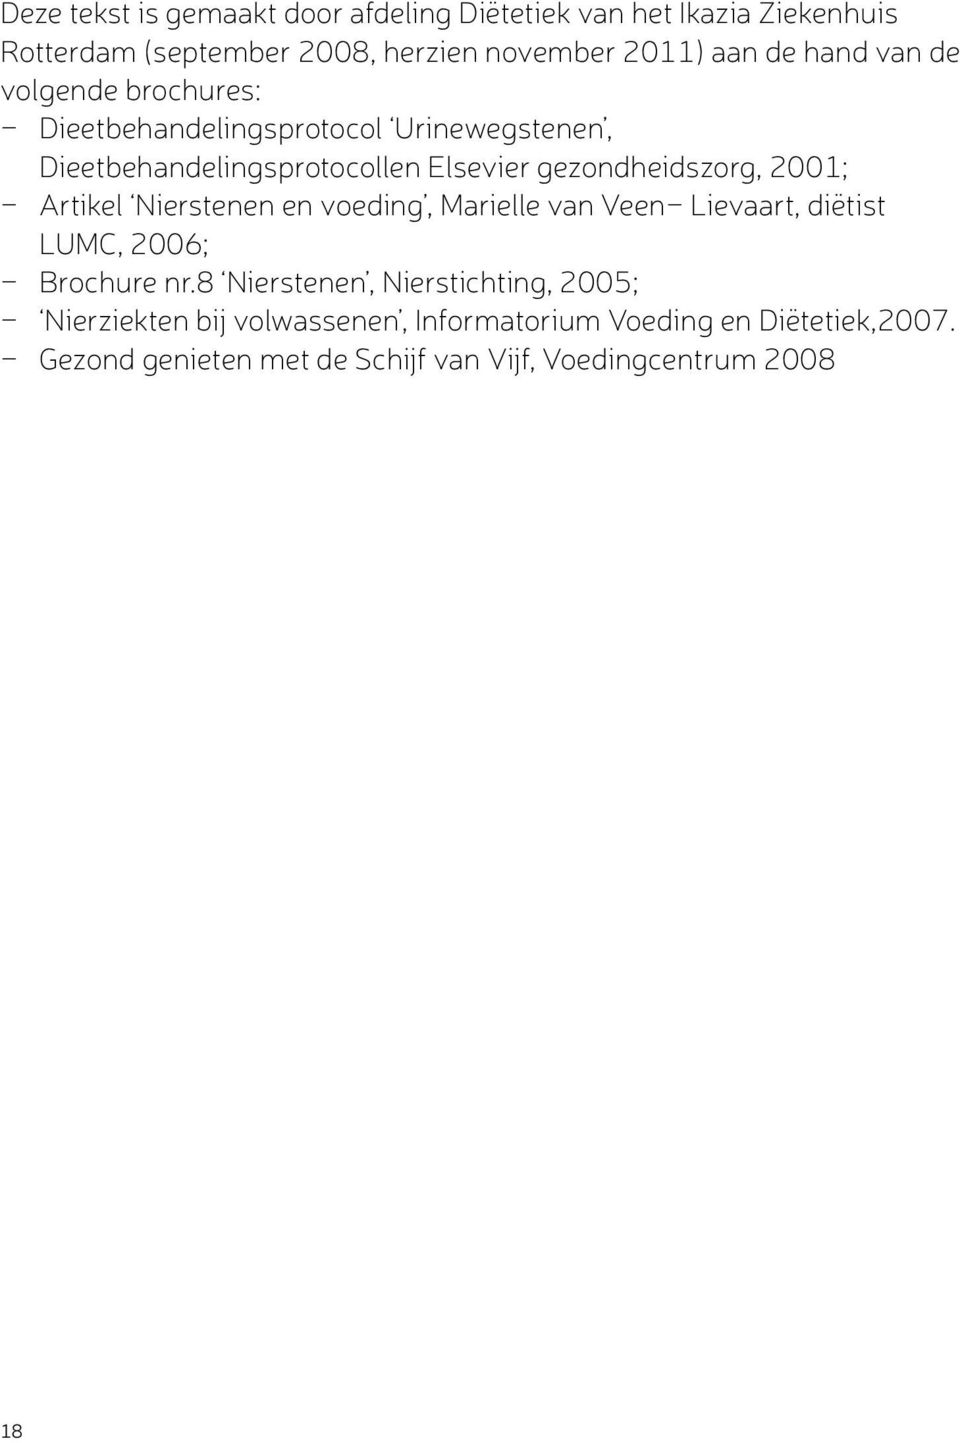 Artikel Nierstenen en voeding, Marielle van Veen- Lievaart, diëtist LUMC, 2006; - Brochure nr.